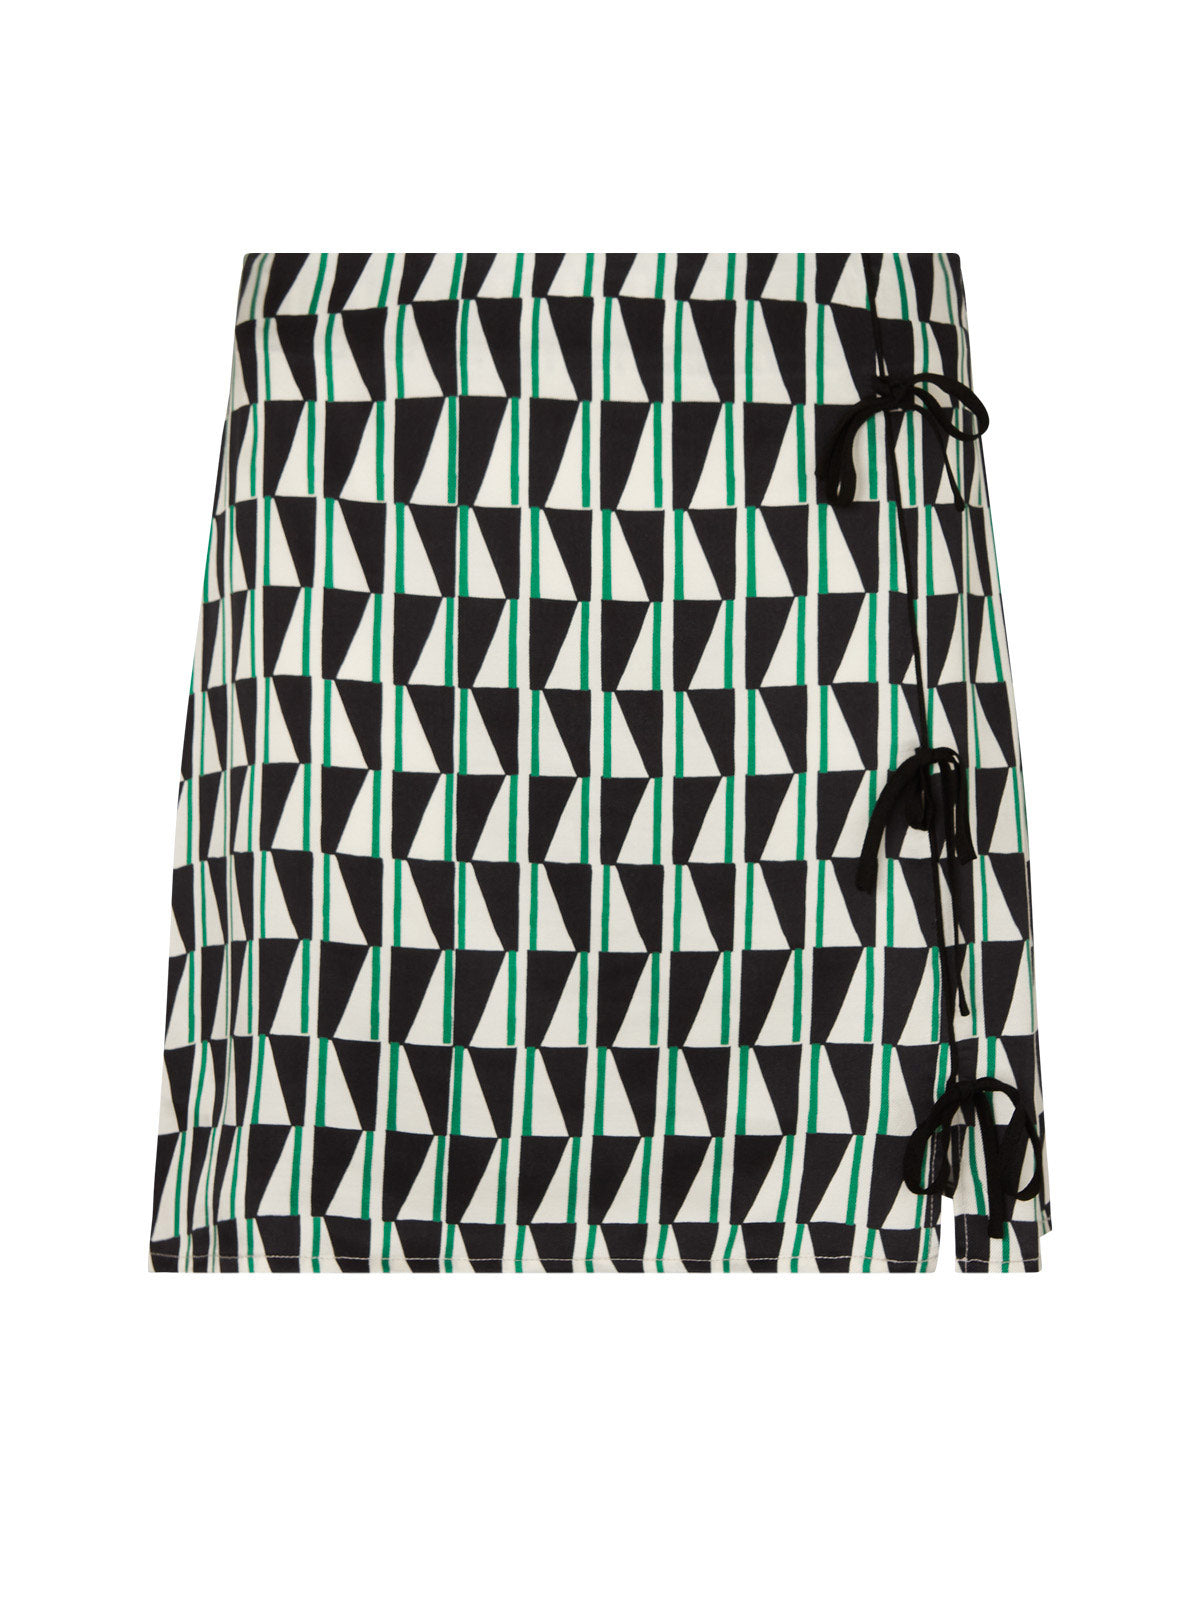 Christa Green Tile Print Mini Skirt by KITRI Studio